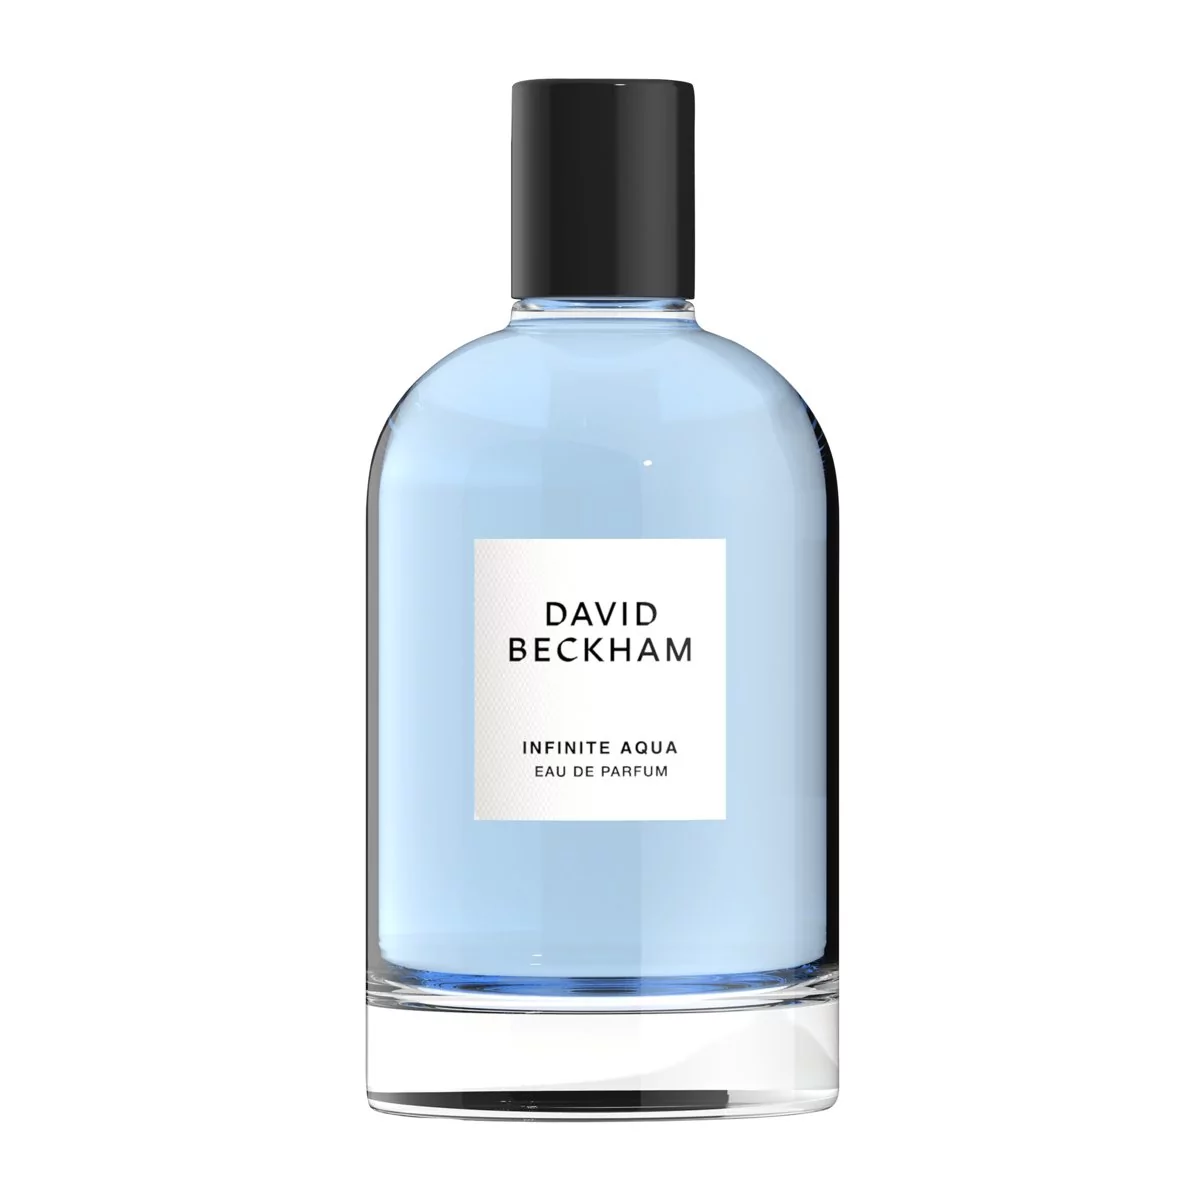 David Beckham Infinite Aqua woda perfumowana 100 ml dla mężczyzn